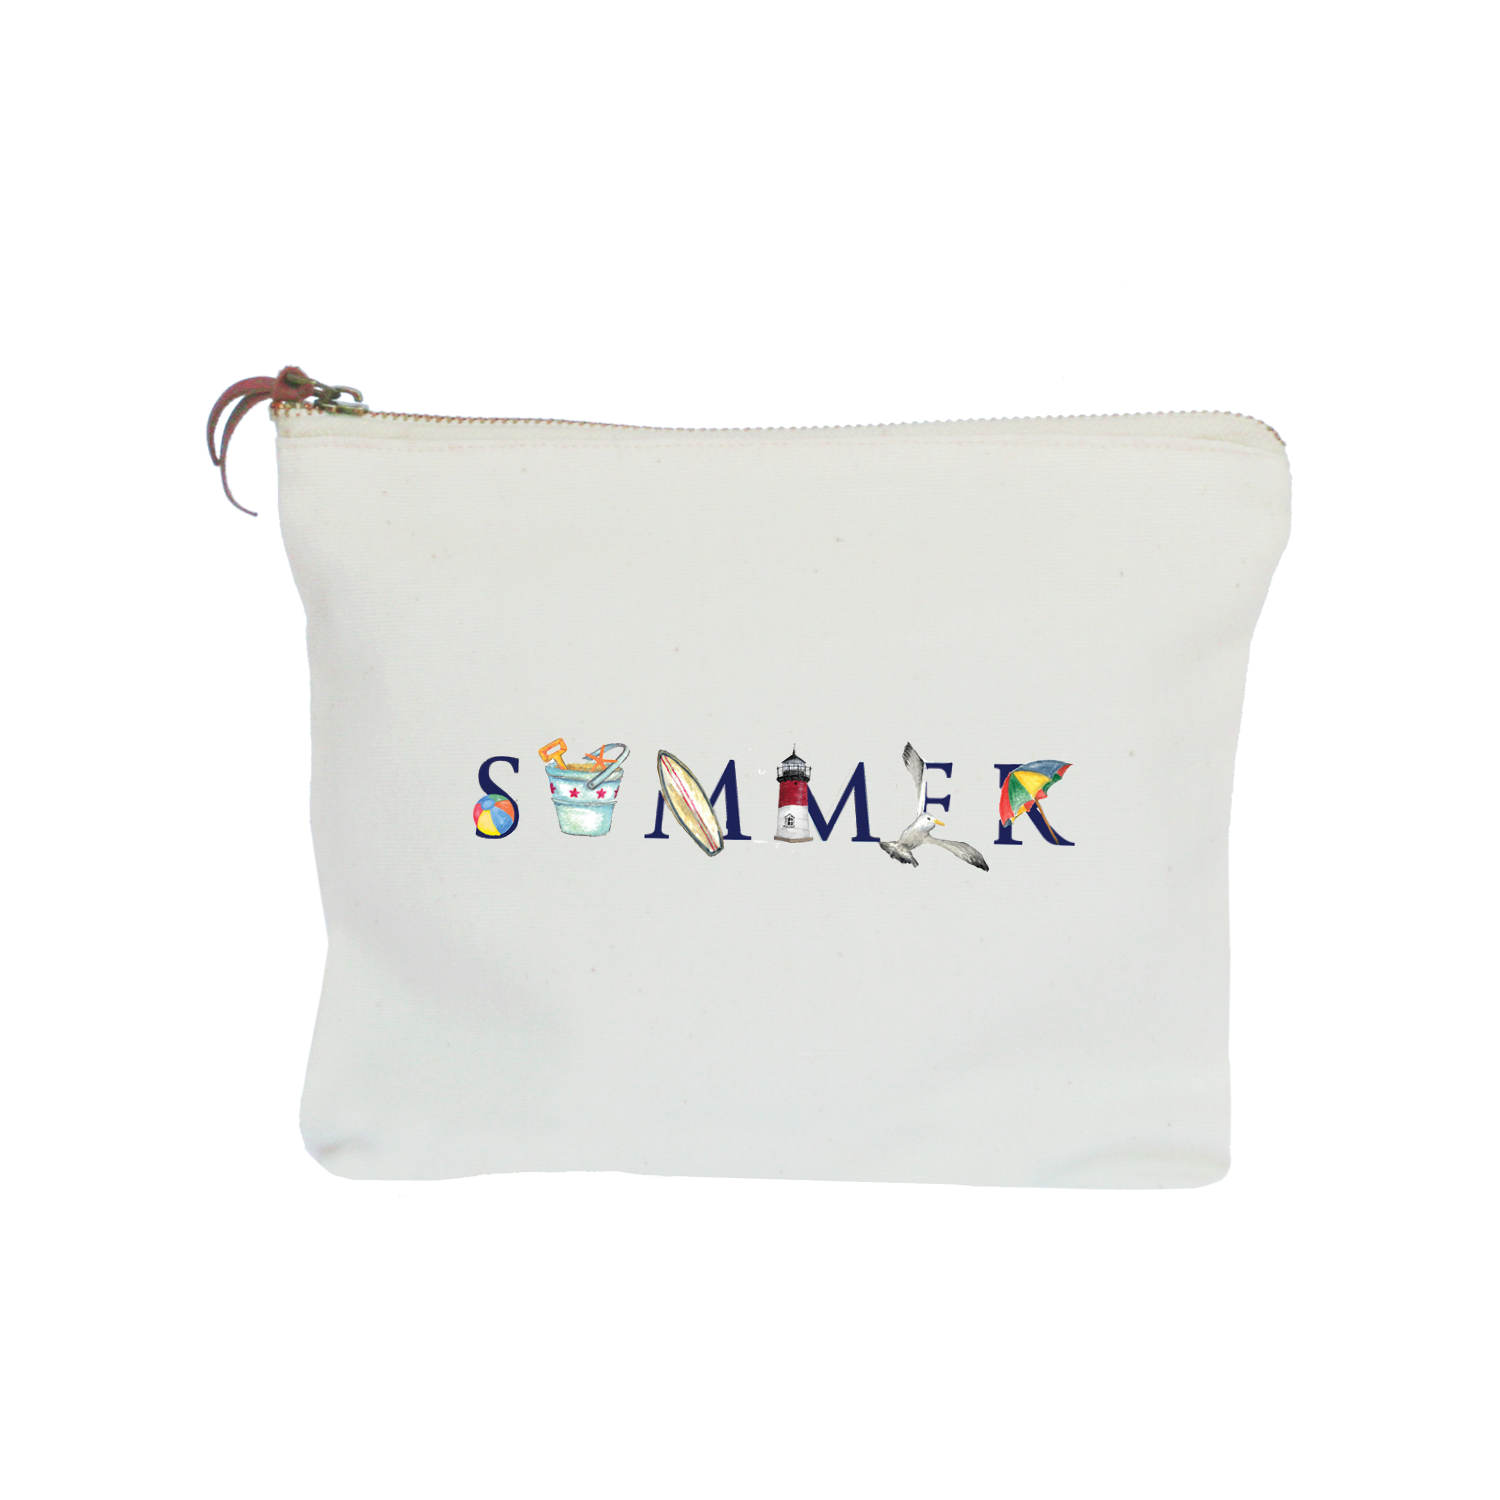 summer (new england version) zipper pouch